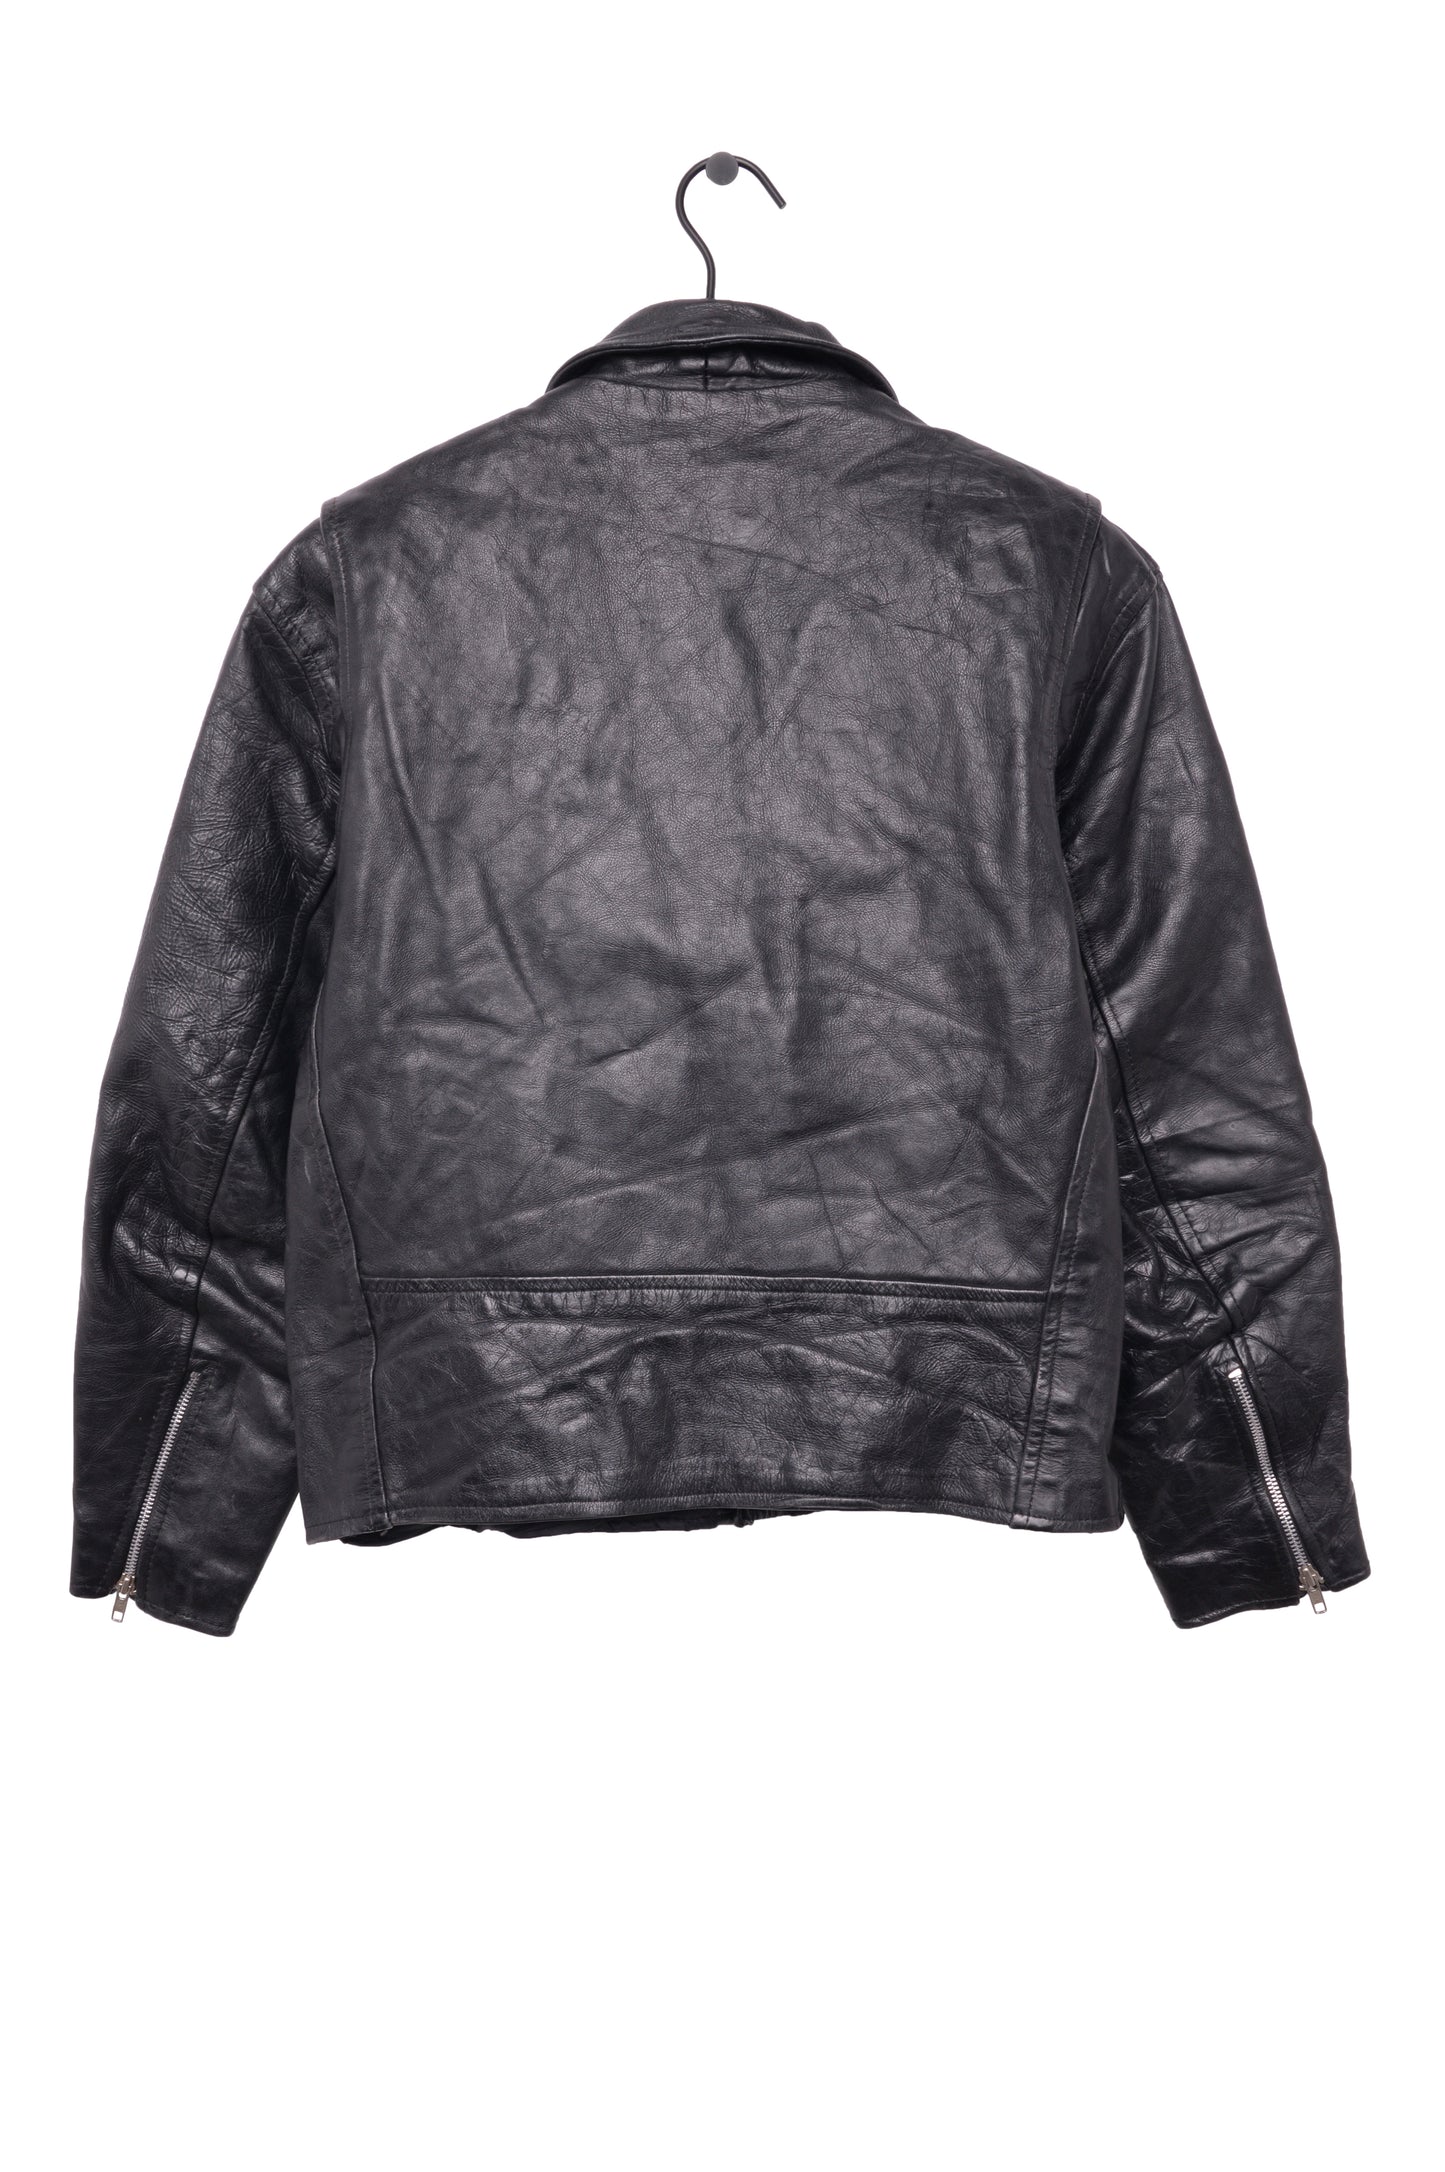 1980s Leather Moto Jacket